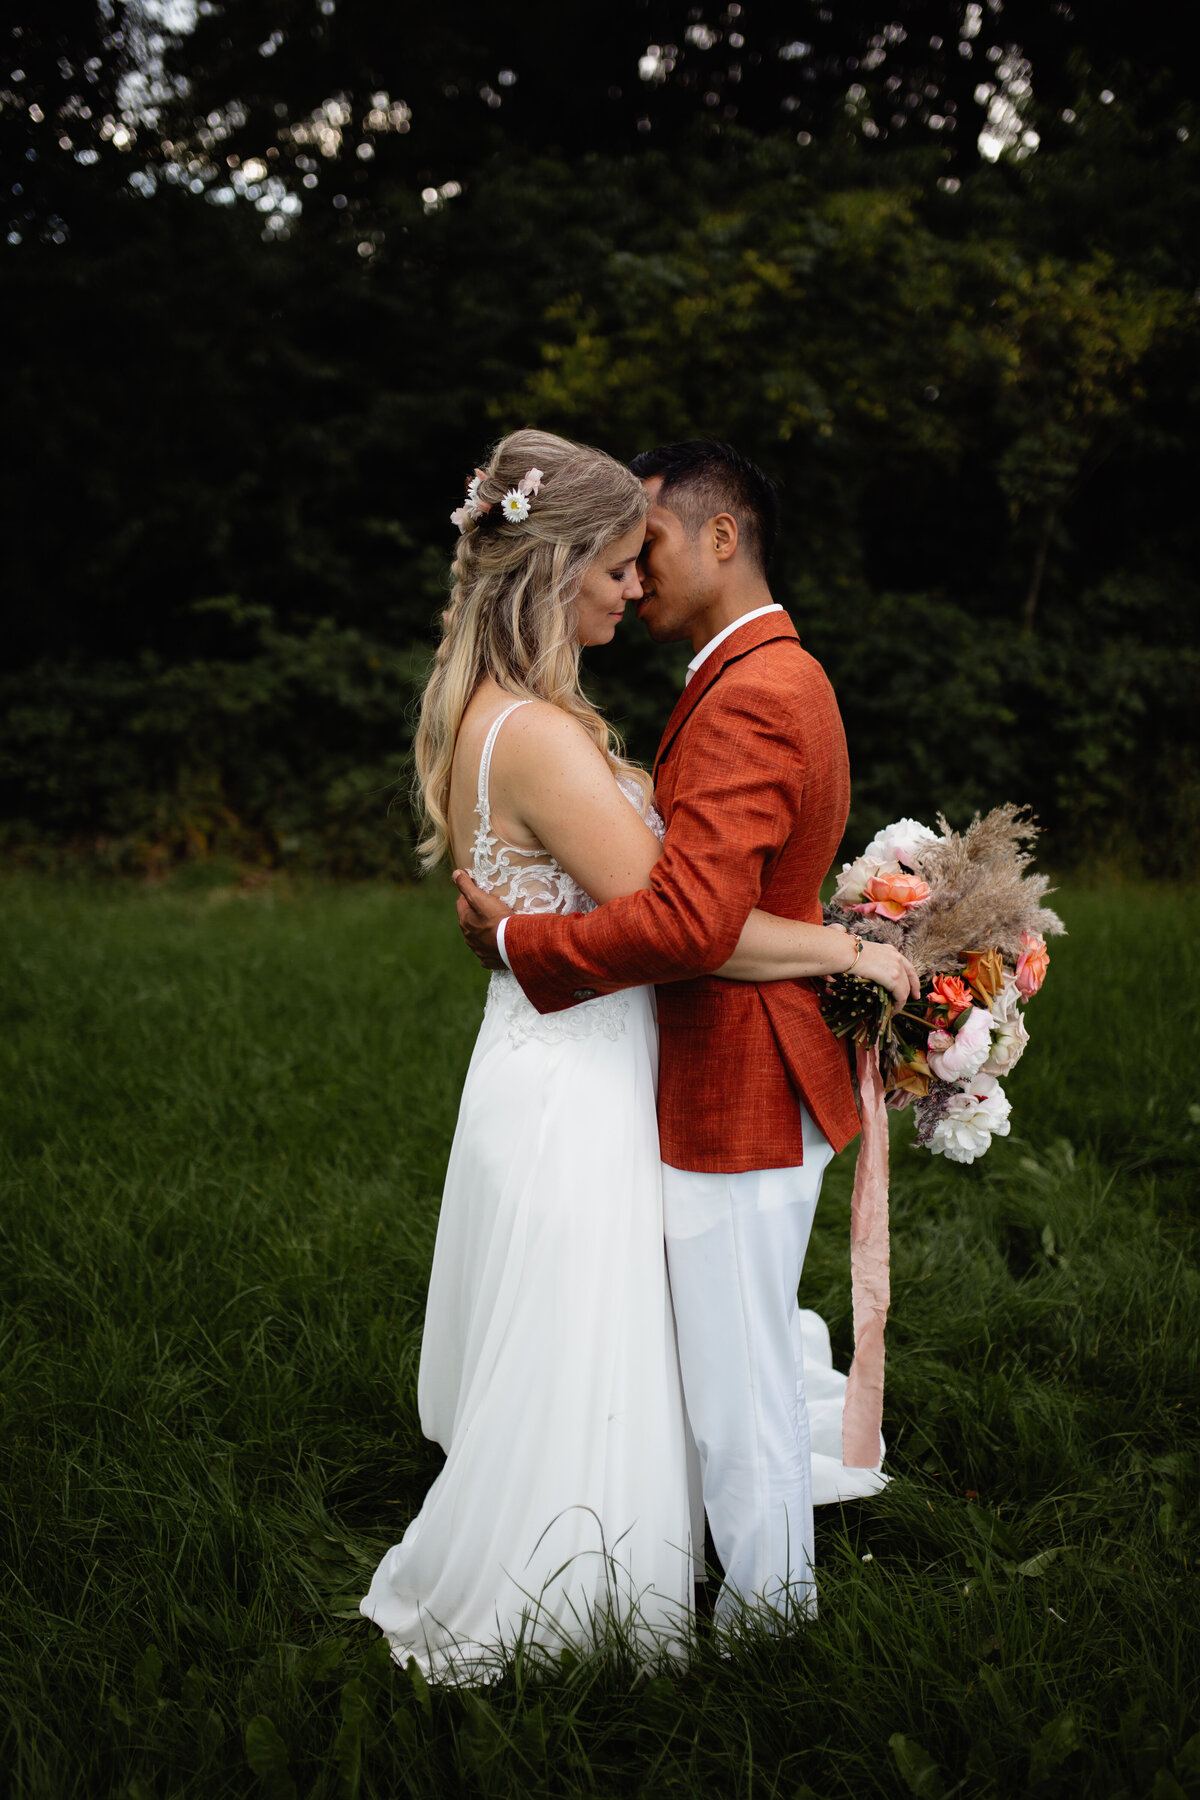 Gideon and Cynthia - Martijn Roos Wedding Photos - 0930